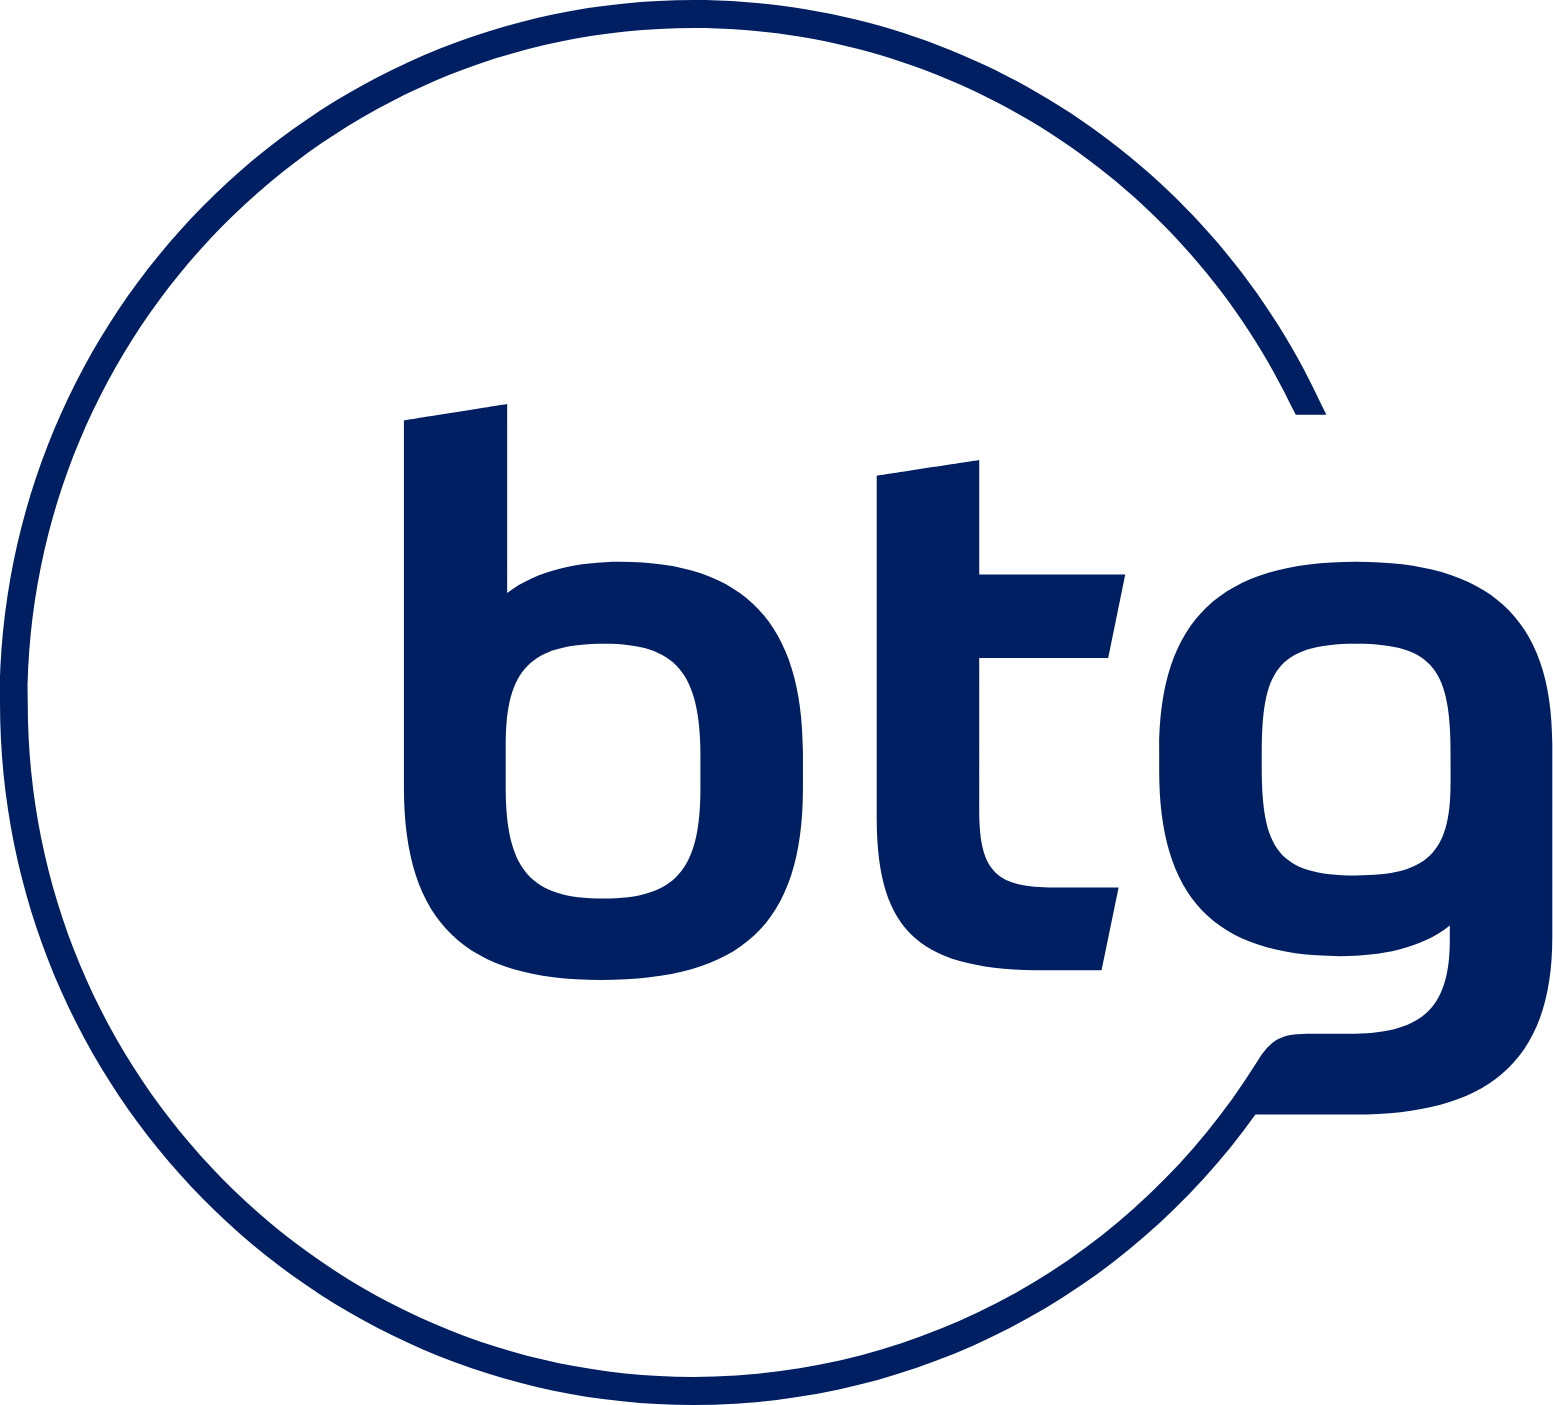 BTG Pactual logo (transparent PNG)